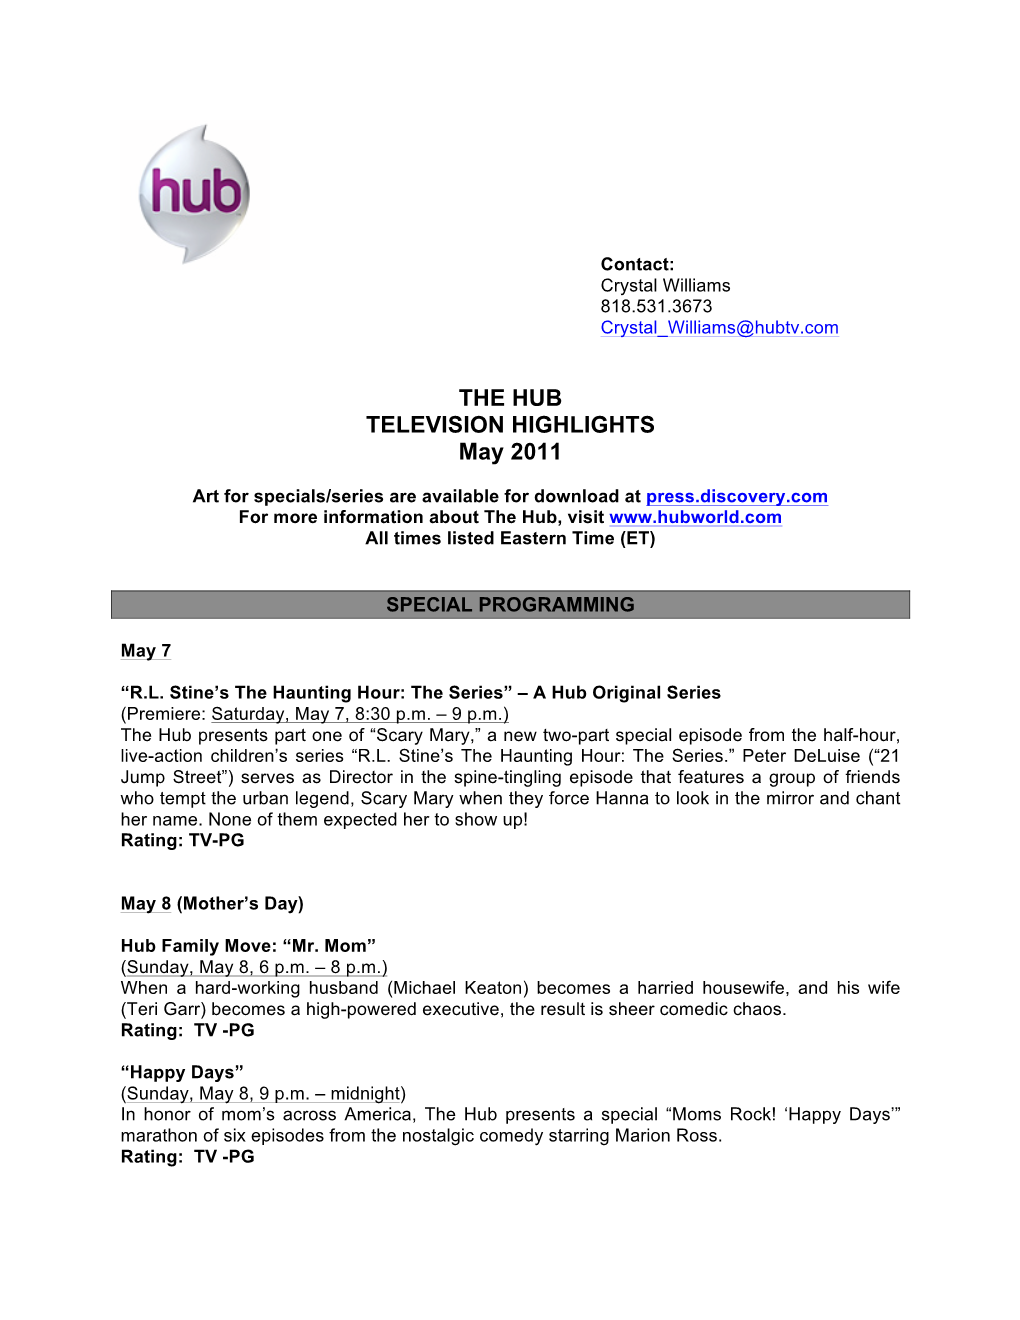 The Hub May 2011 Highlights